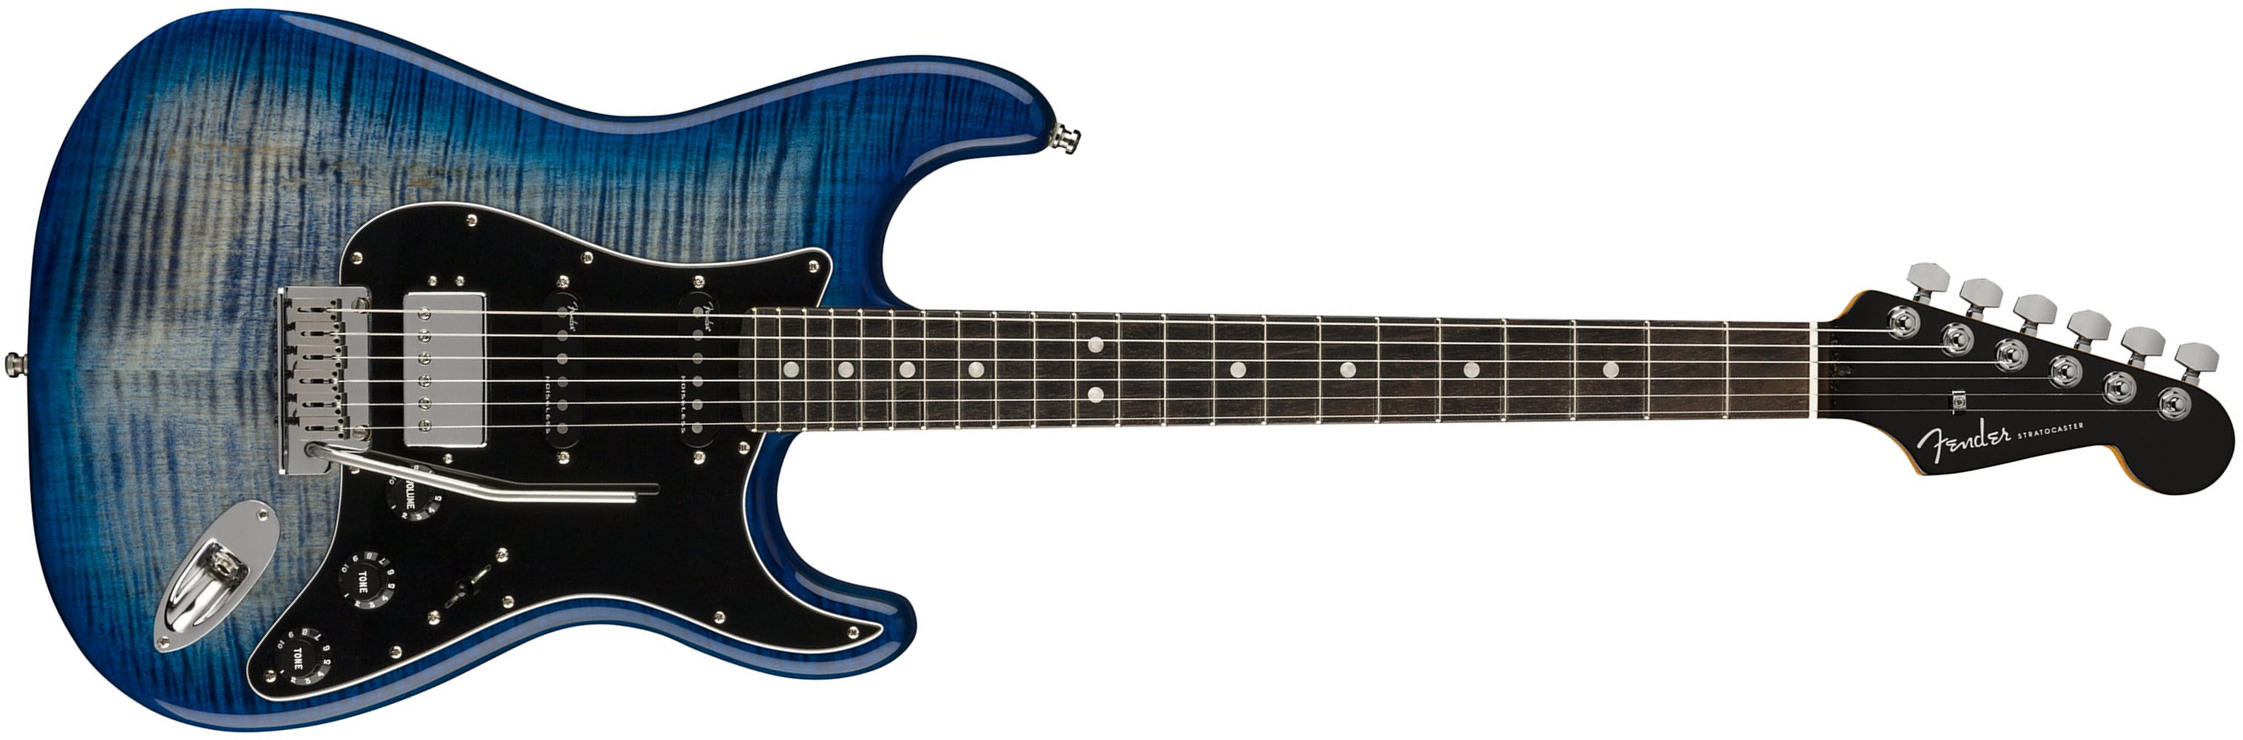 Fender Strat American Ultra Ltd Usa Hss Trem Eb - Denim Burst - Elektrische gitaar in Str-vorm - Main picture